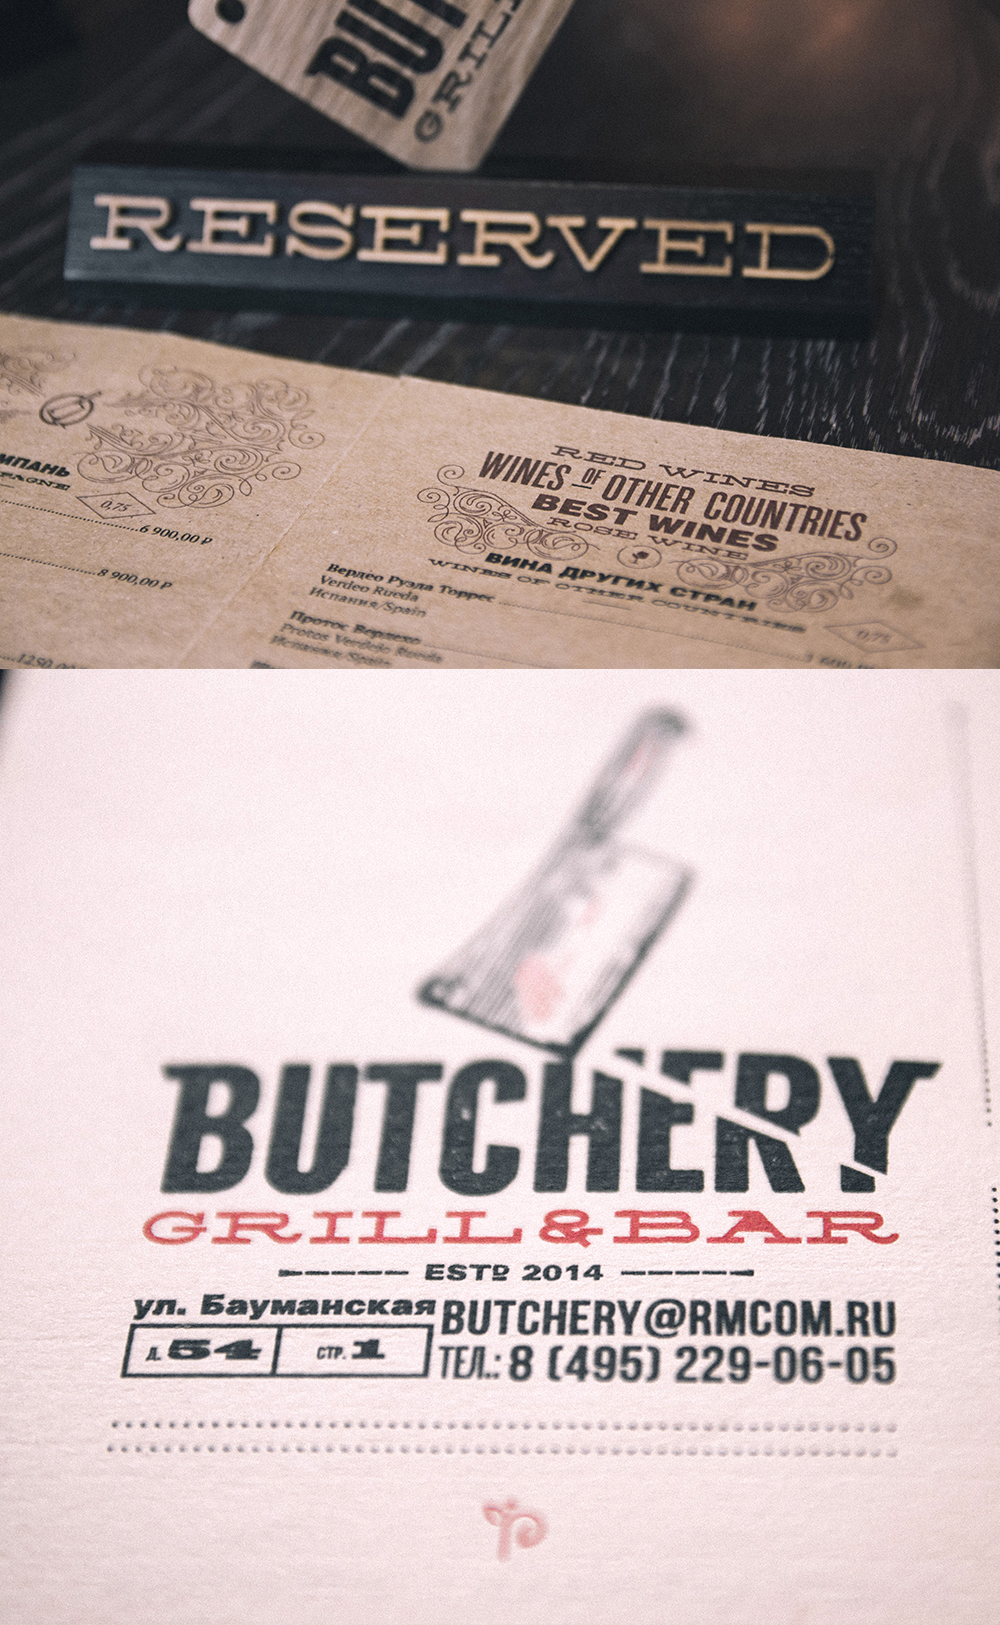 butcher grill bar Meet axe logo